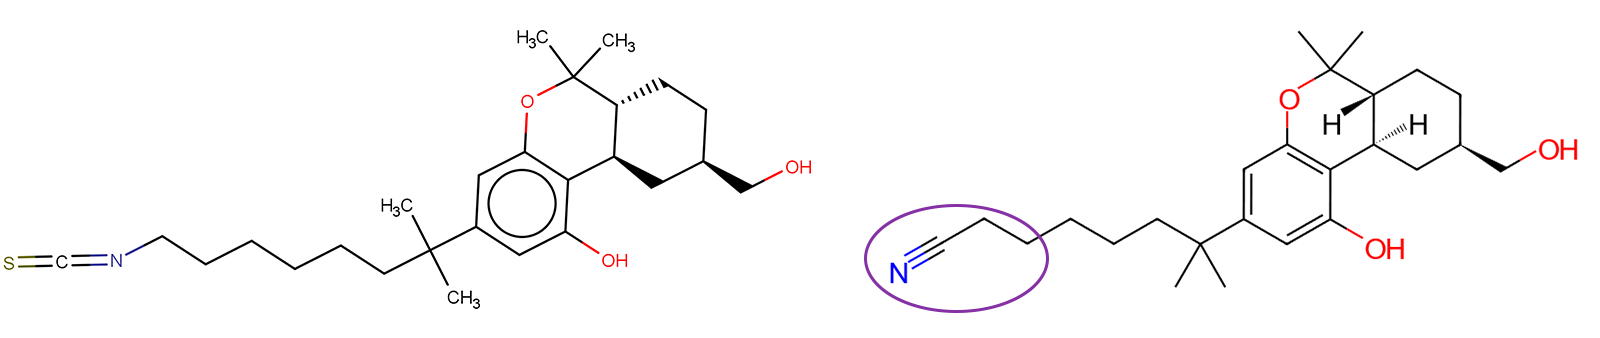 Figure 1 Cryo-EM ligands for CB1 and CB2